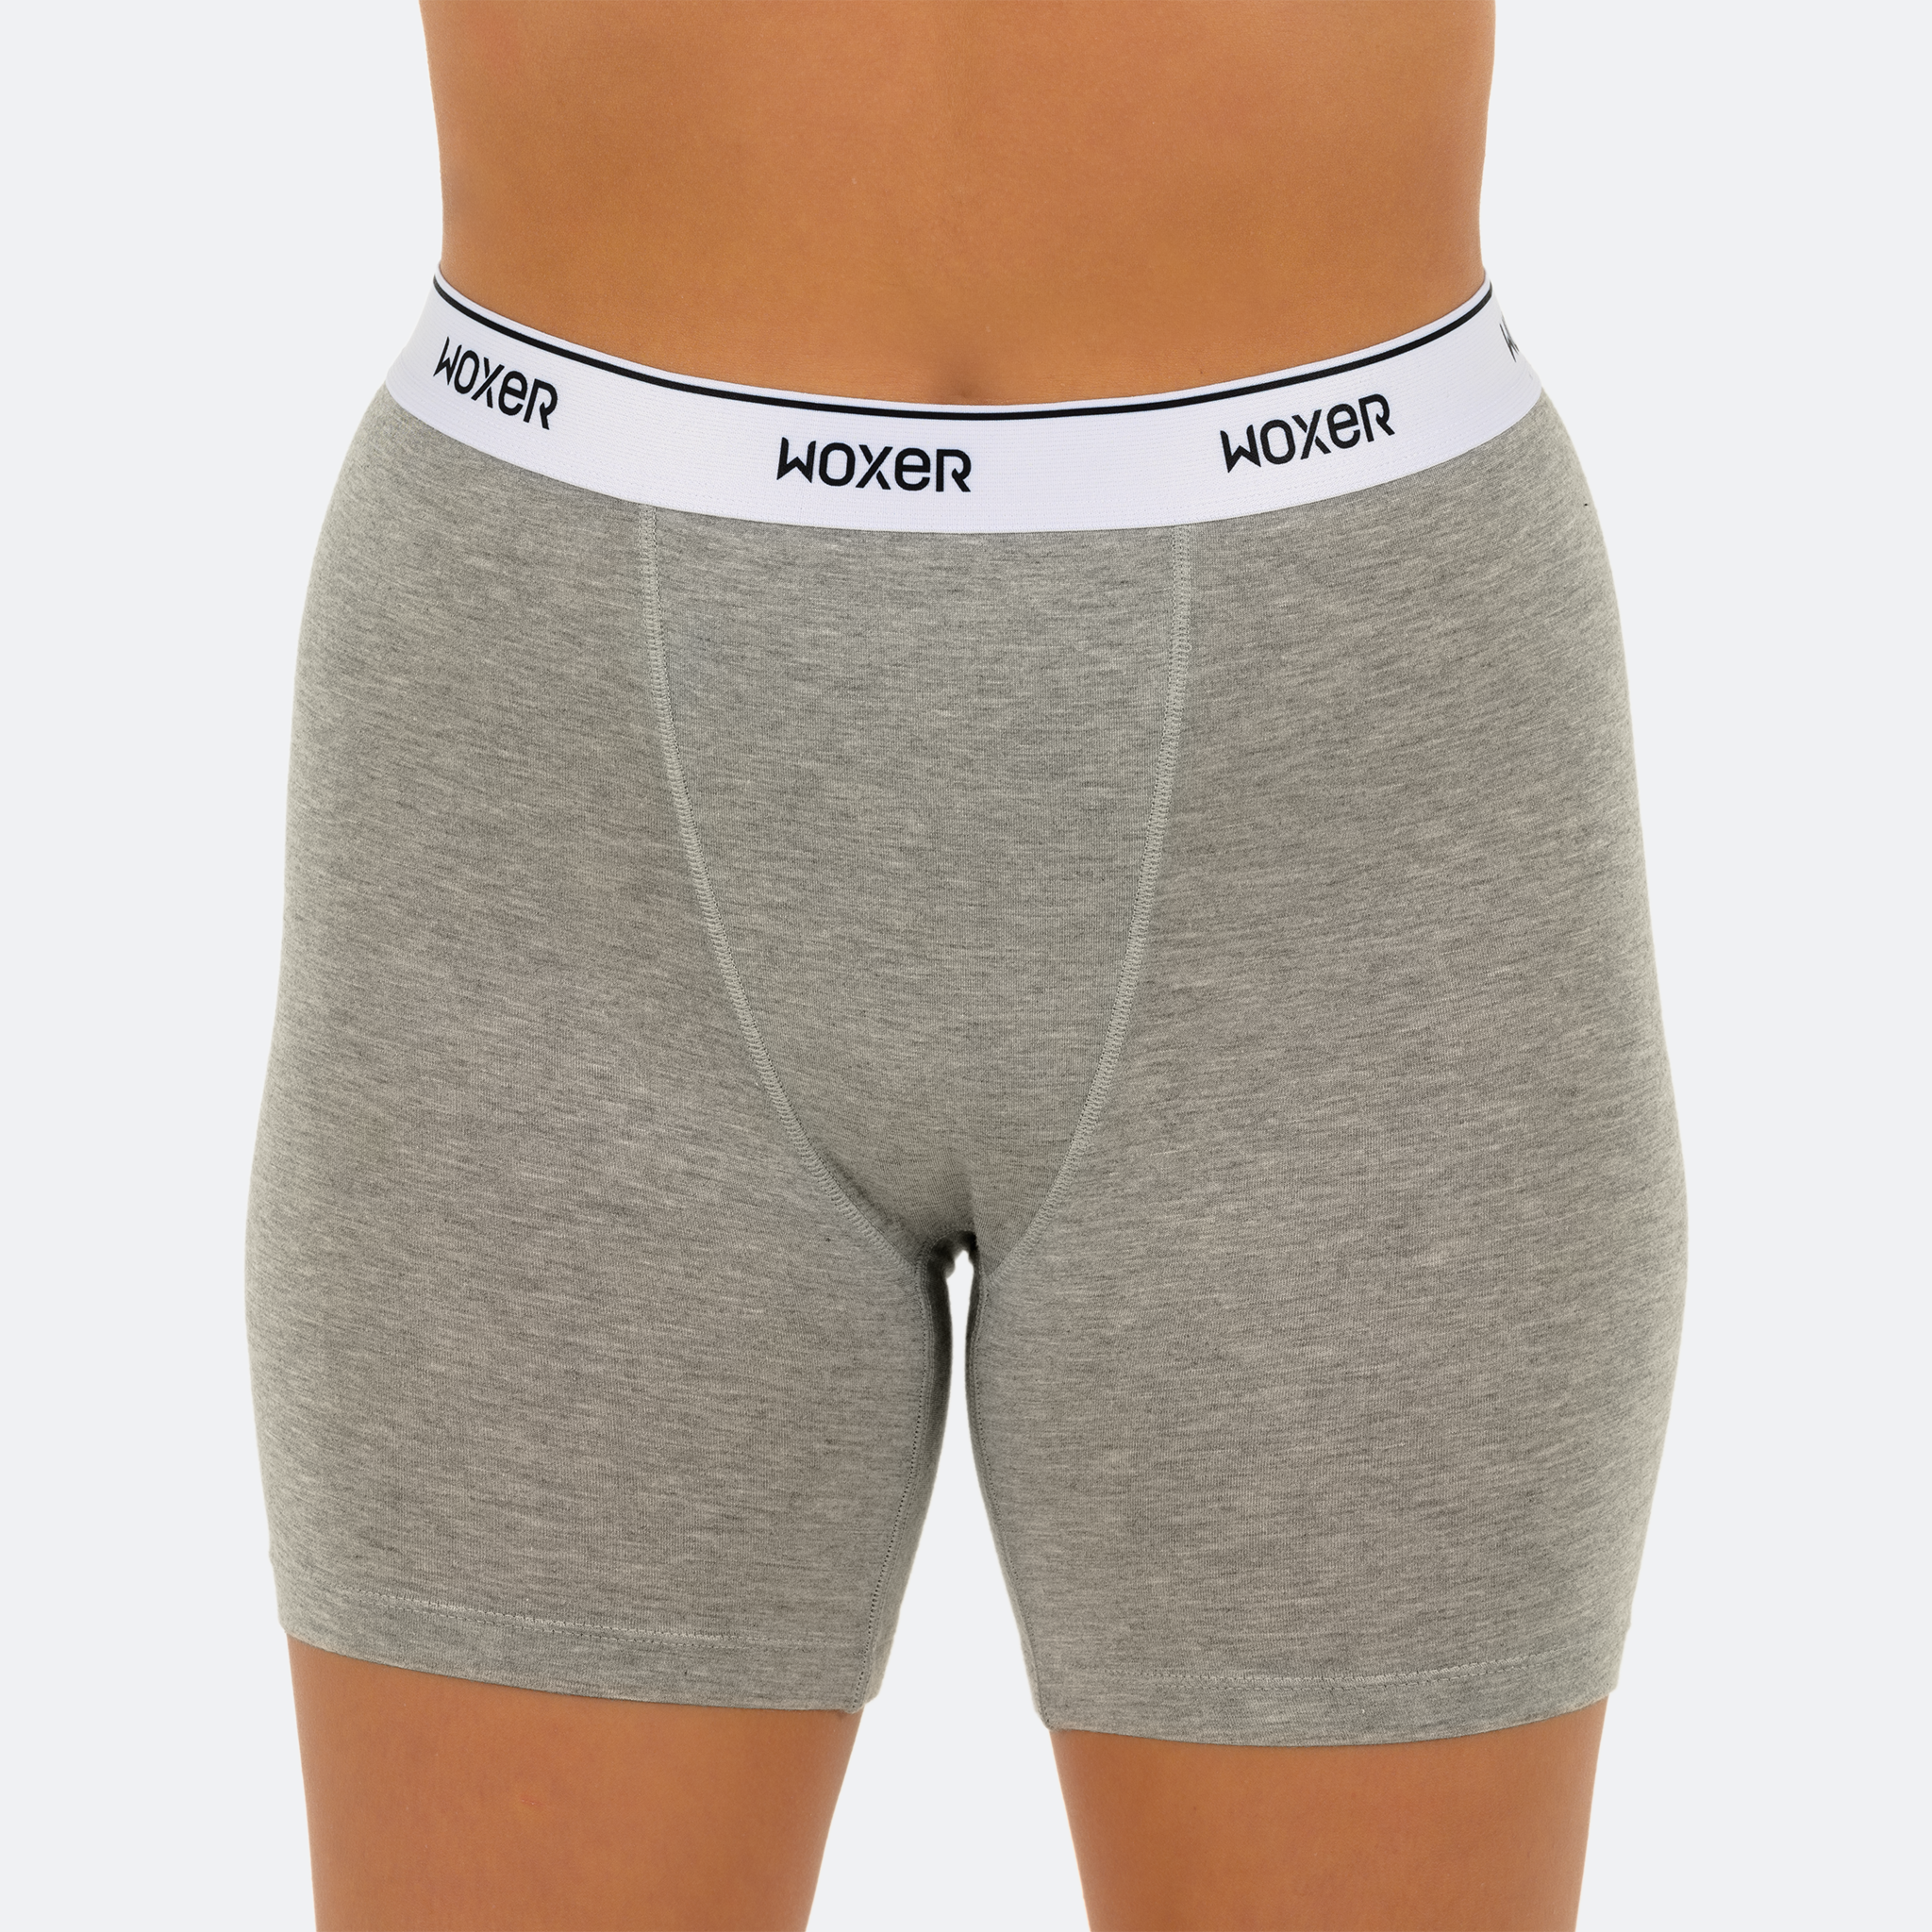 Woxer Womens Boxer Briefs Underwear, Baller 5” Uganda